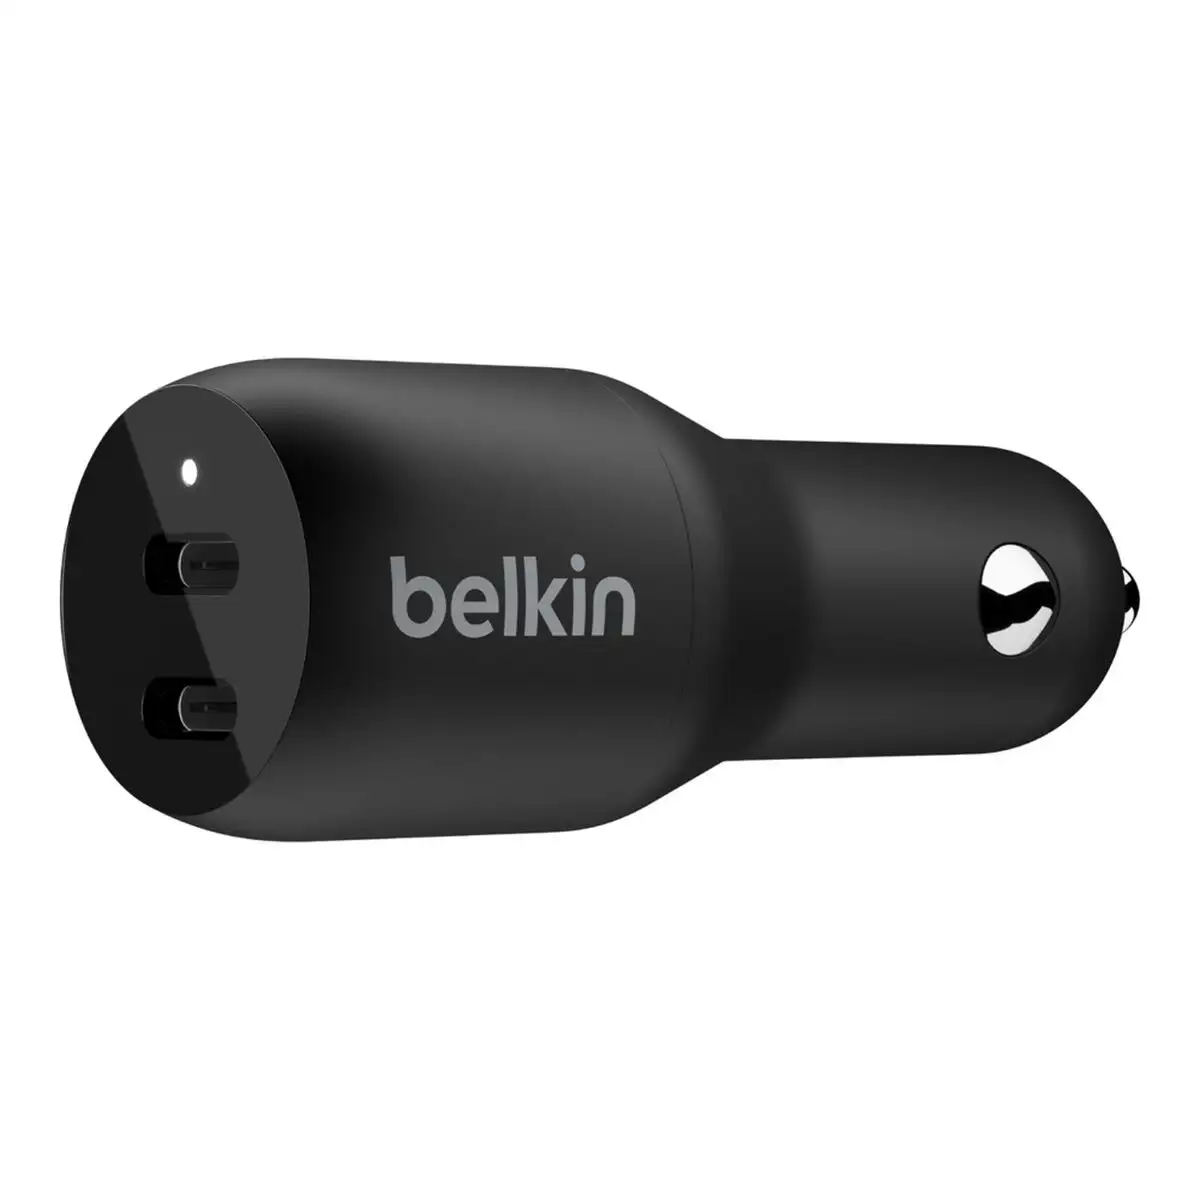 Chargeur de voiture belkin ccb002btbk noir_2207. DIAYTAR SENEGAL - Votre Destination Shopping Incontournable. Parcourez nos rayons virtuels et trouvez des articles qui répondent à tous vos besoins, du quotidien à l'exceptionnel.